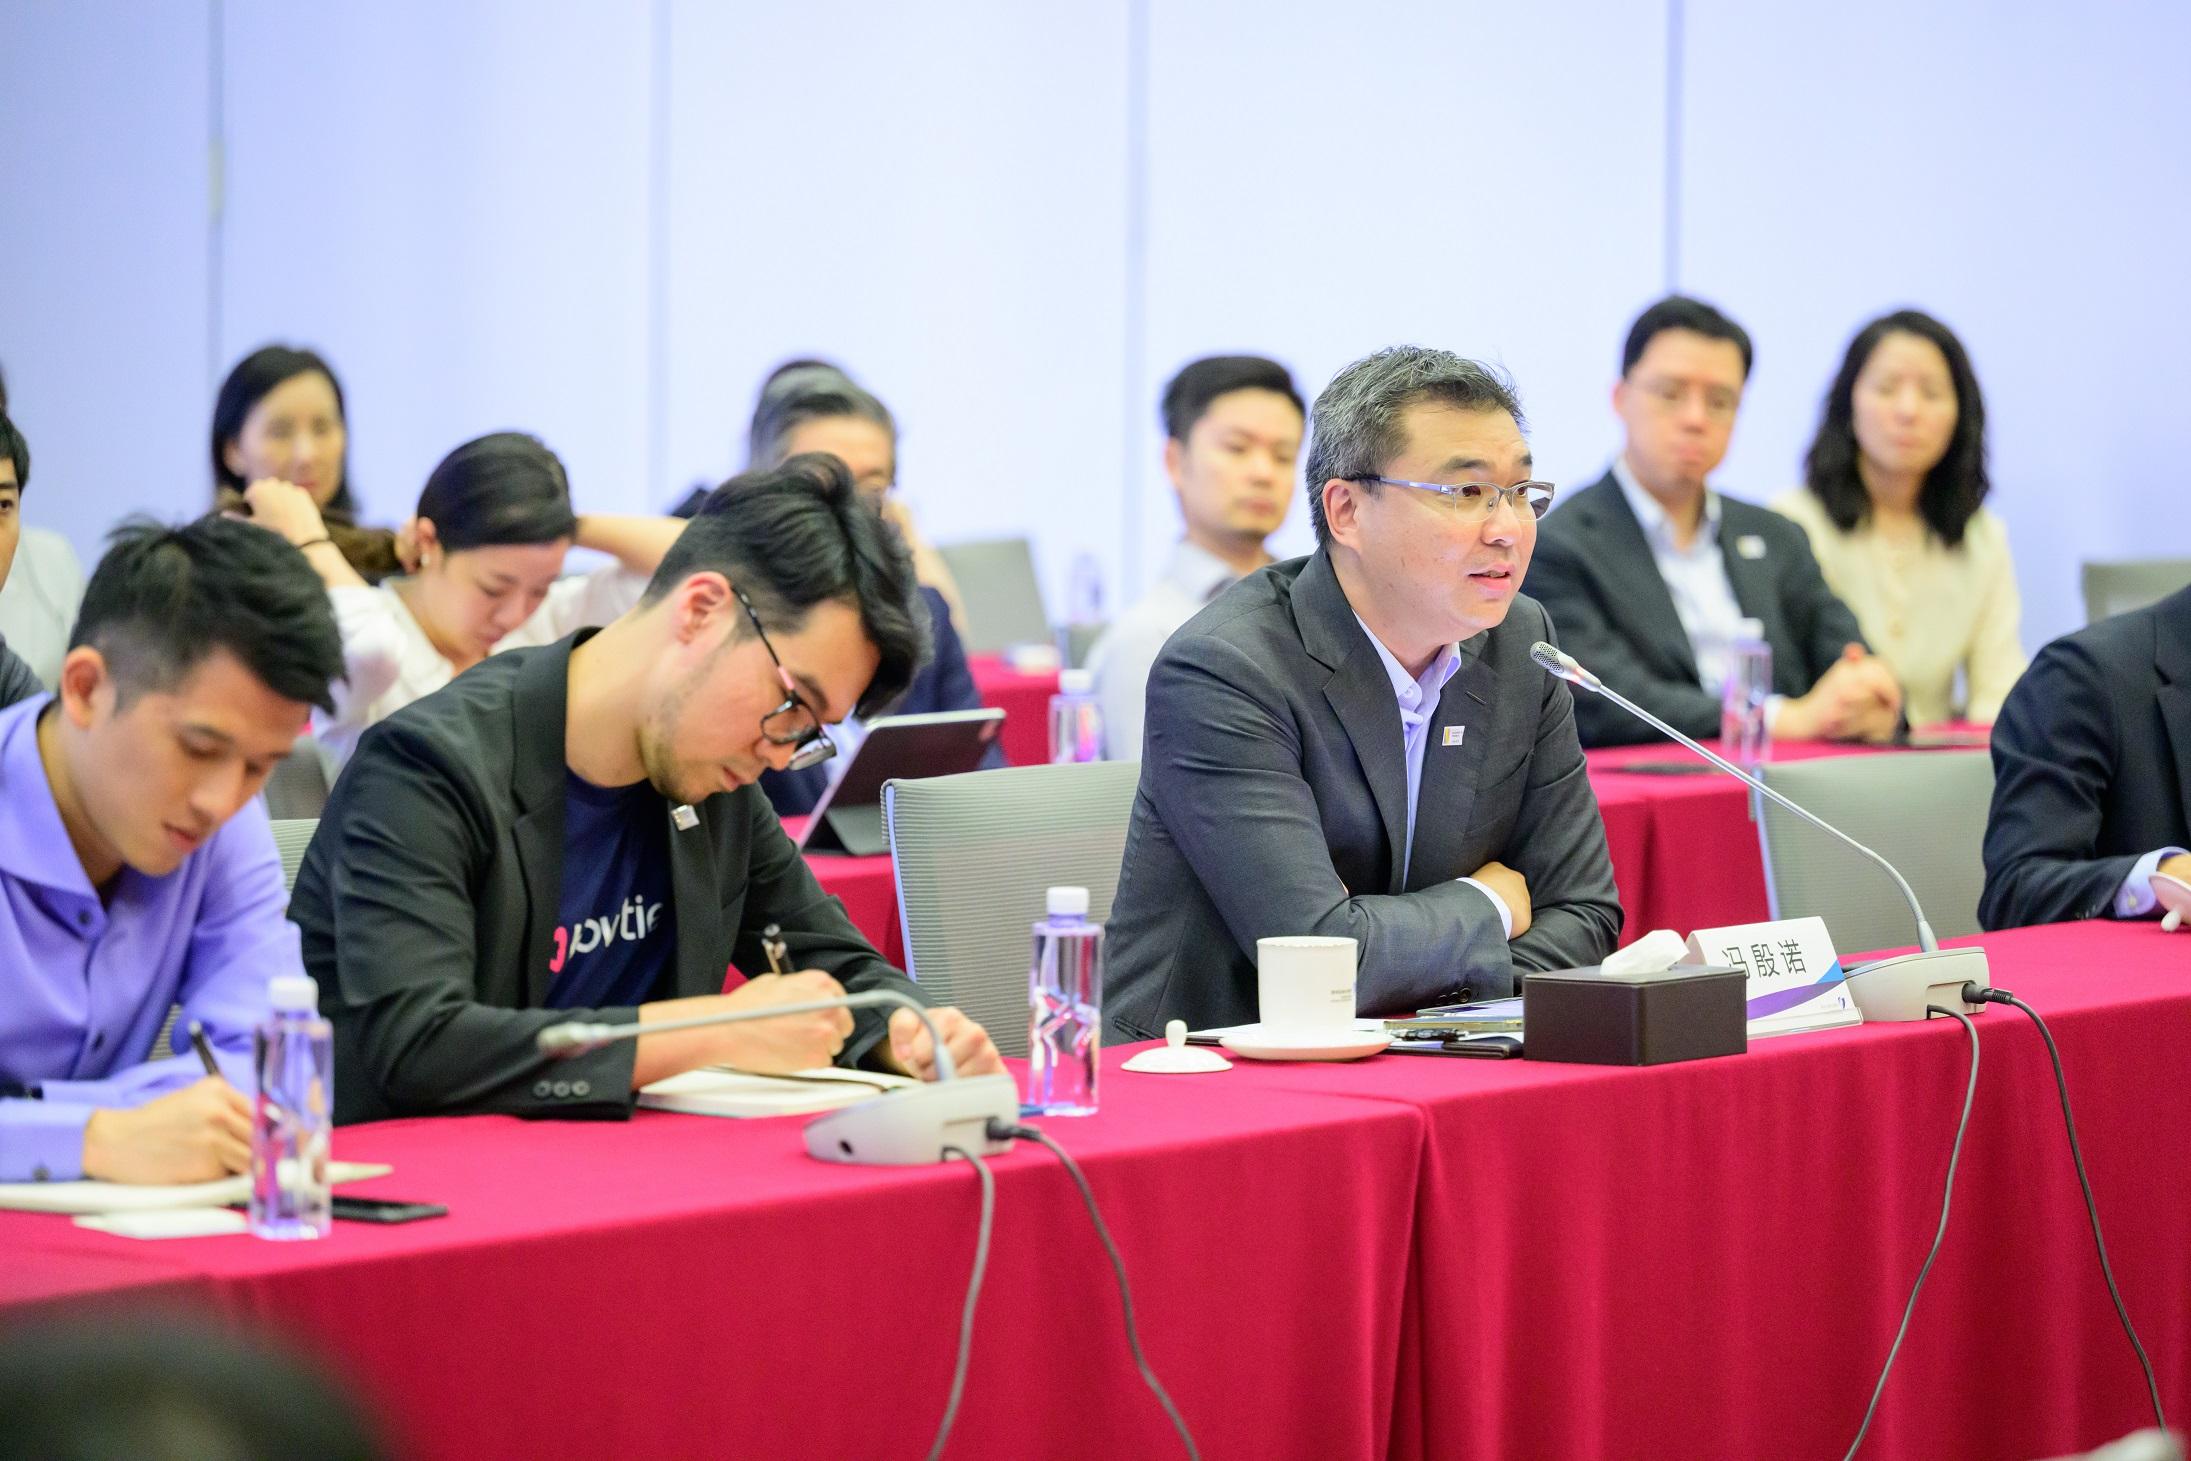 金融學院金融領袖計劃 （計劃）的學員代表於九月二十四日至二十七日完成了計劃首次深圳交流團活動。計劃學員與接待機構進行了富有成果的交流。